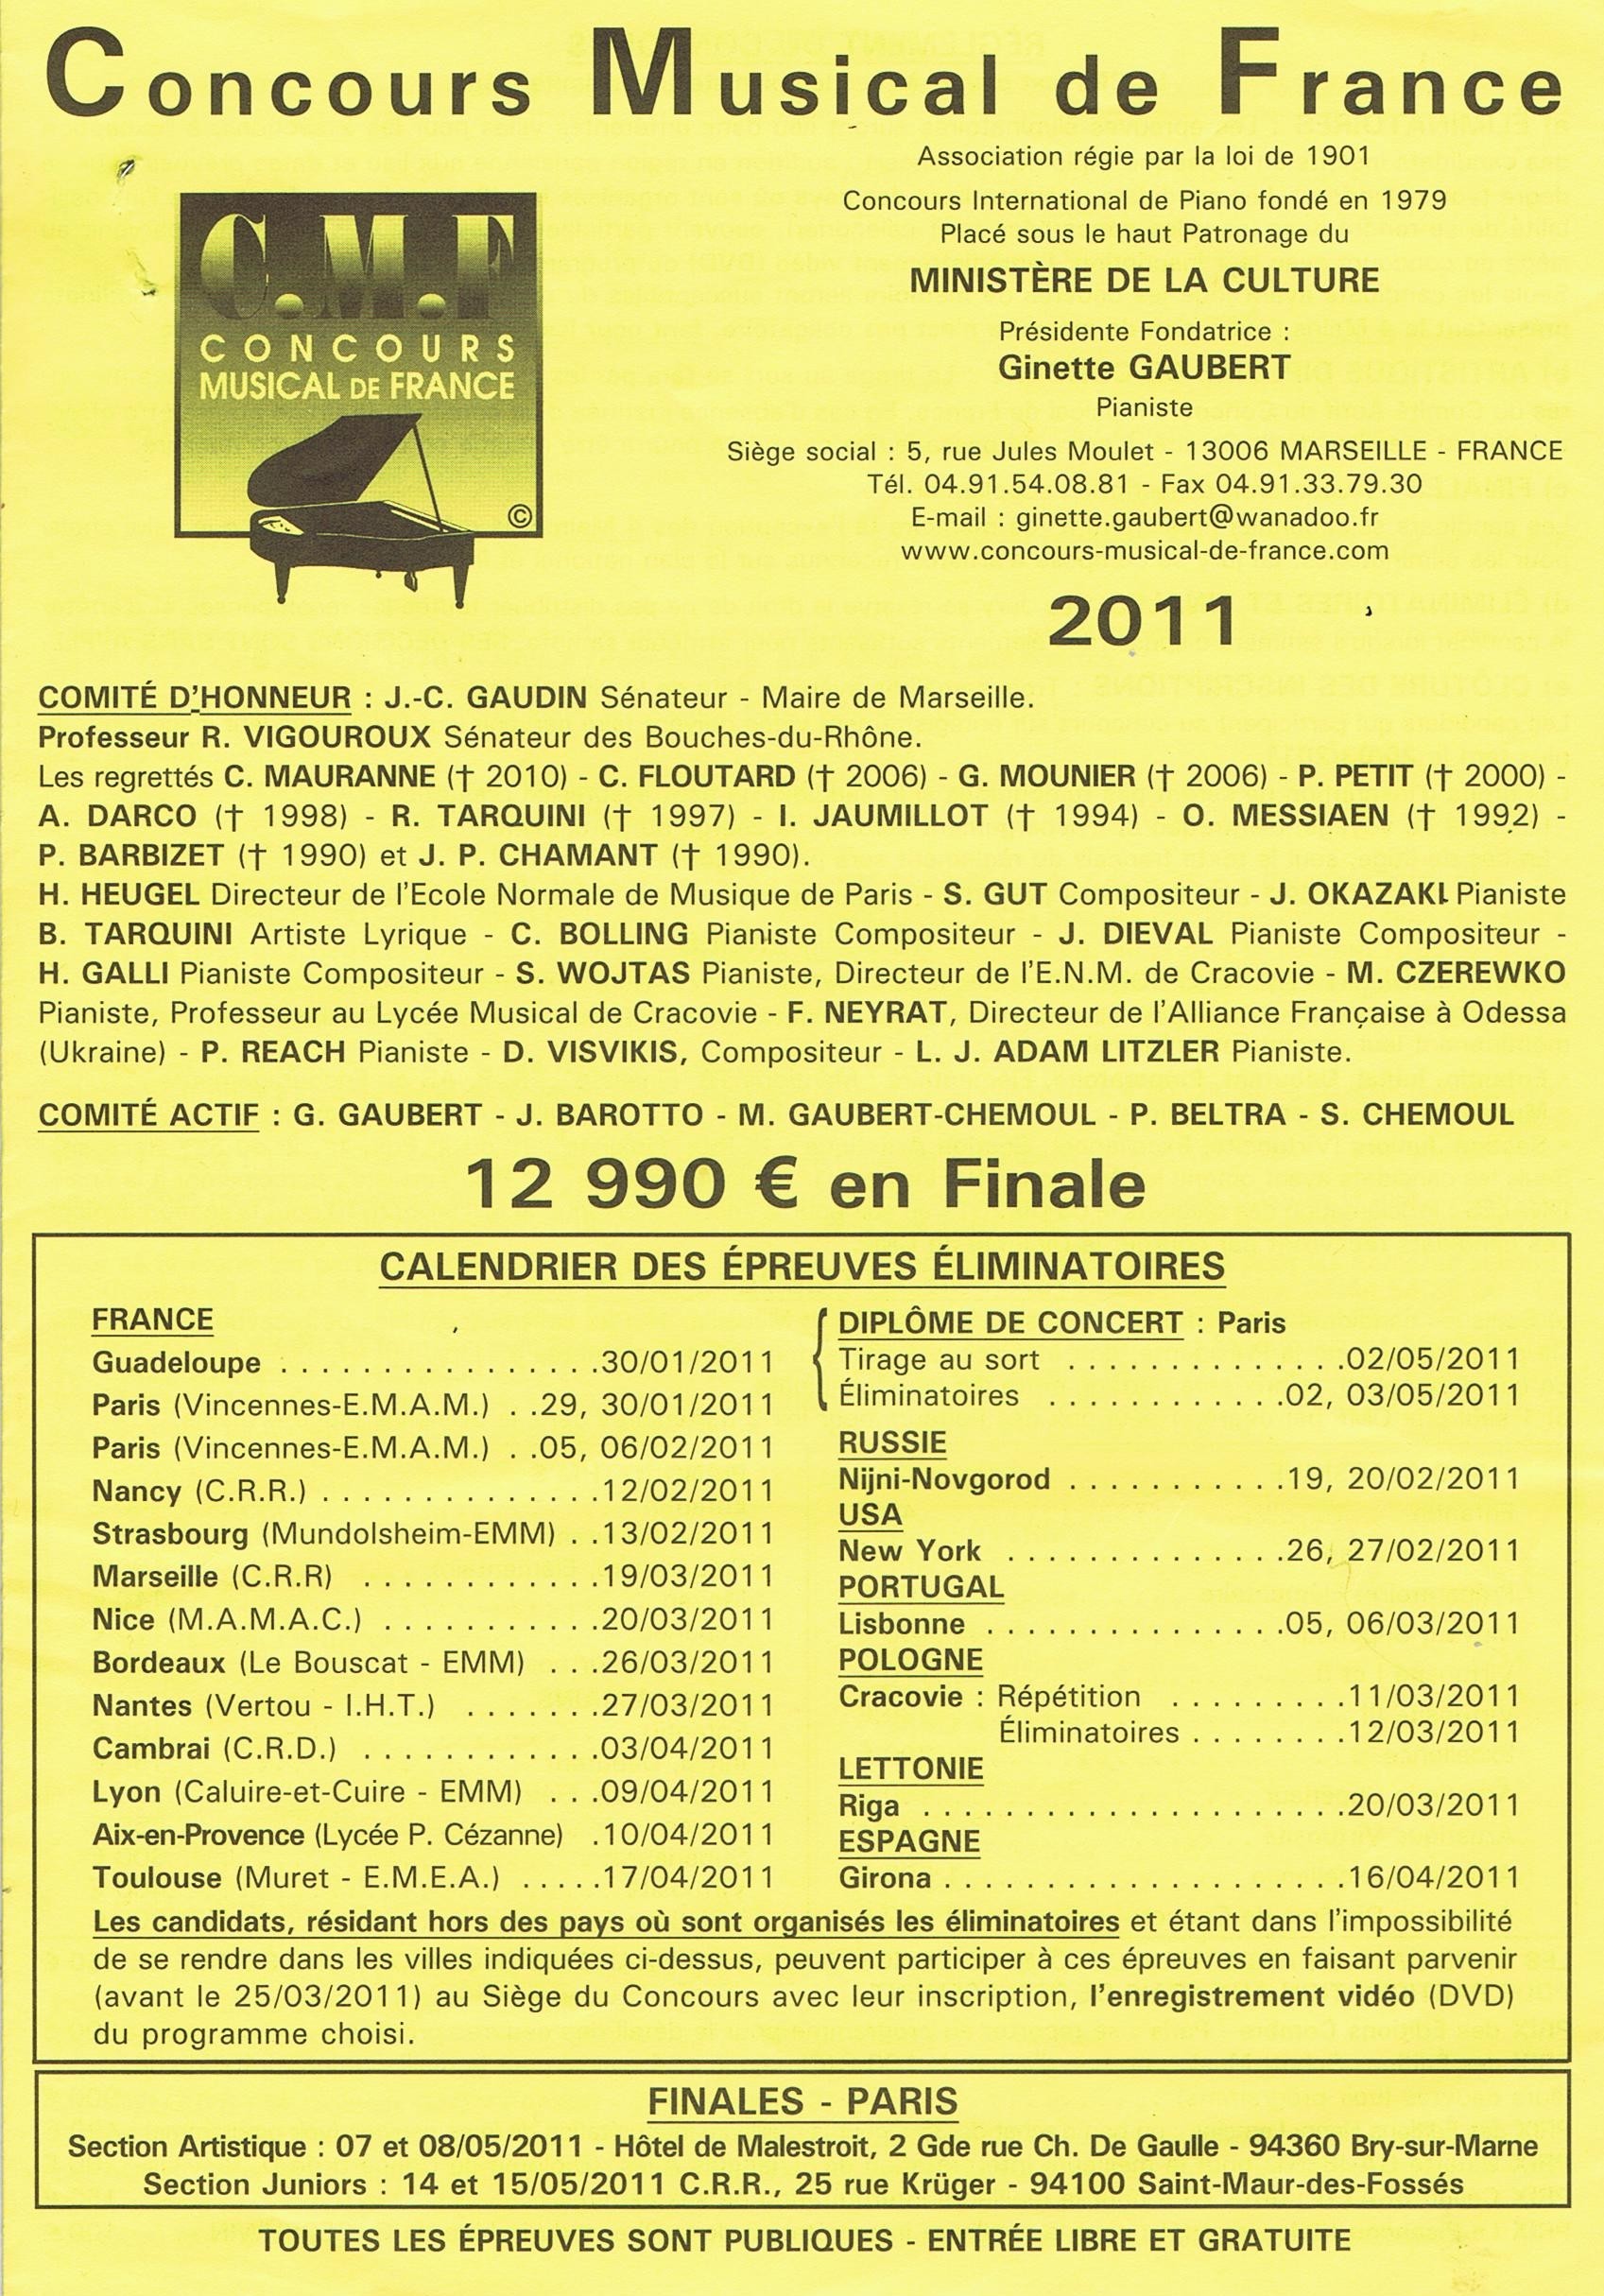 Conservatoire International de Musique PARIS 16 - Concours Musical de France